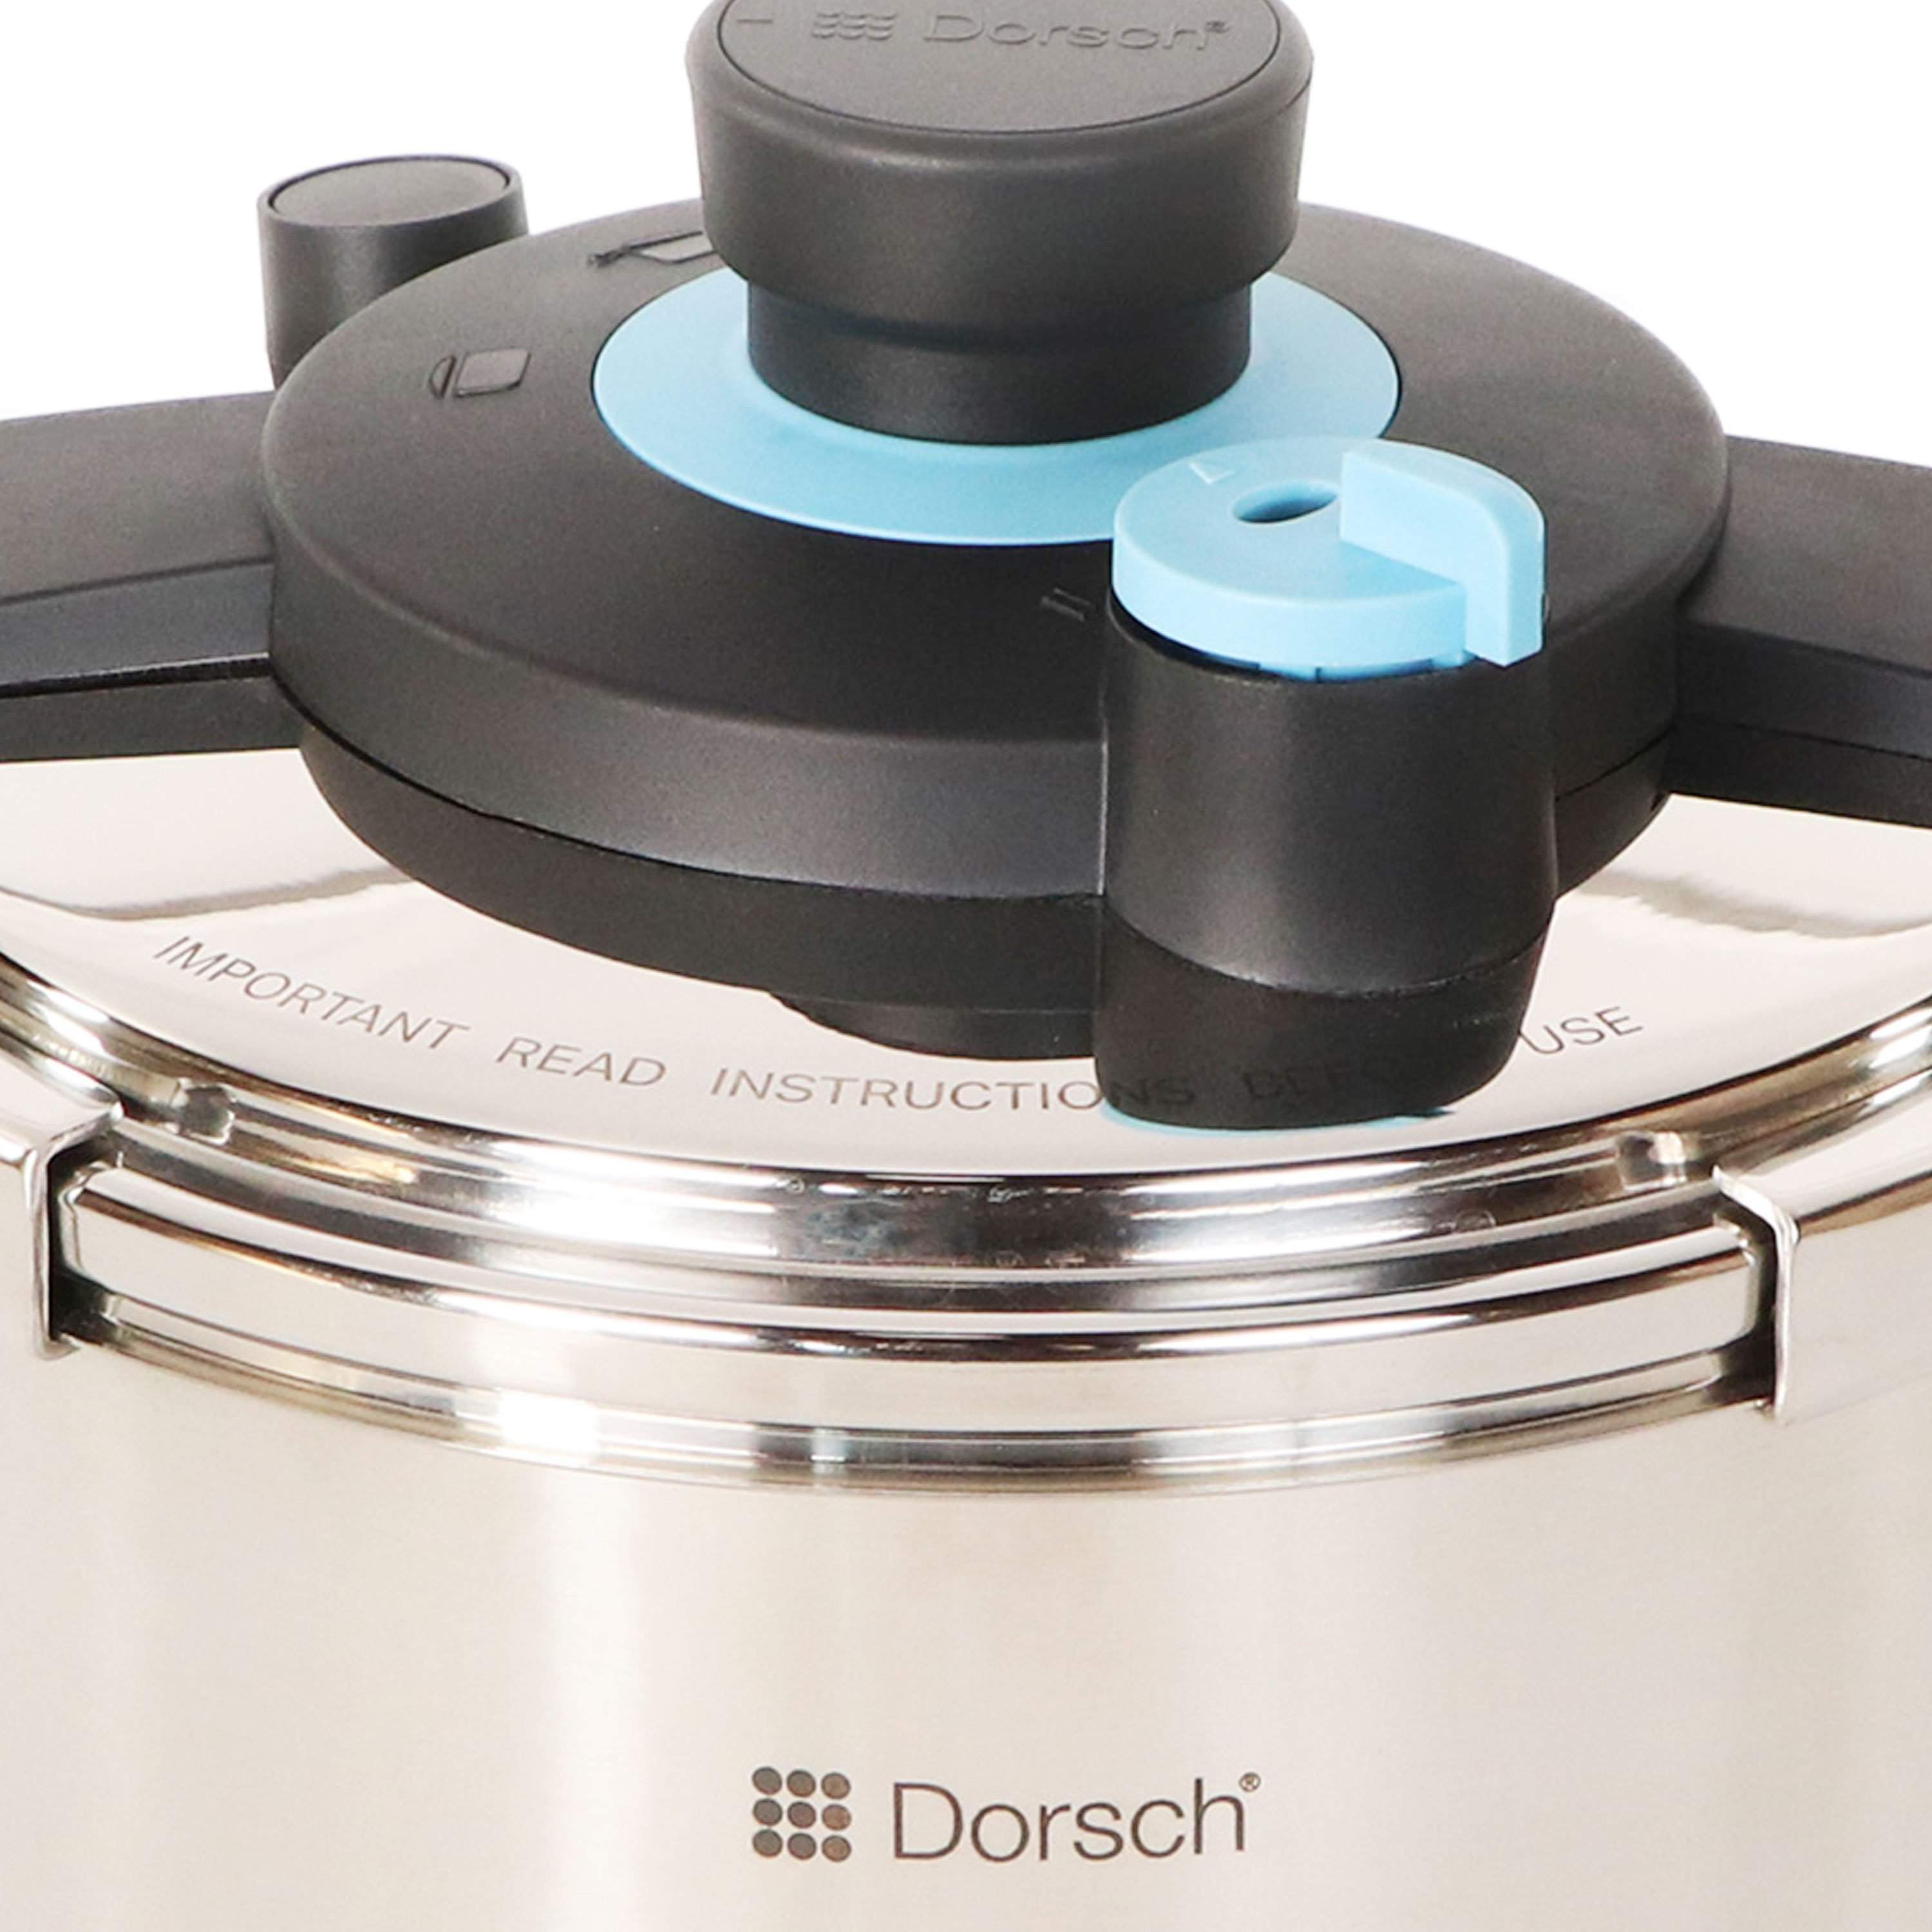 6L Dorsch GoPress Pressure Cooker-Royal Brands Co-